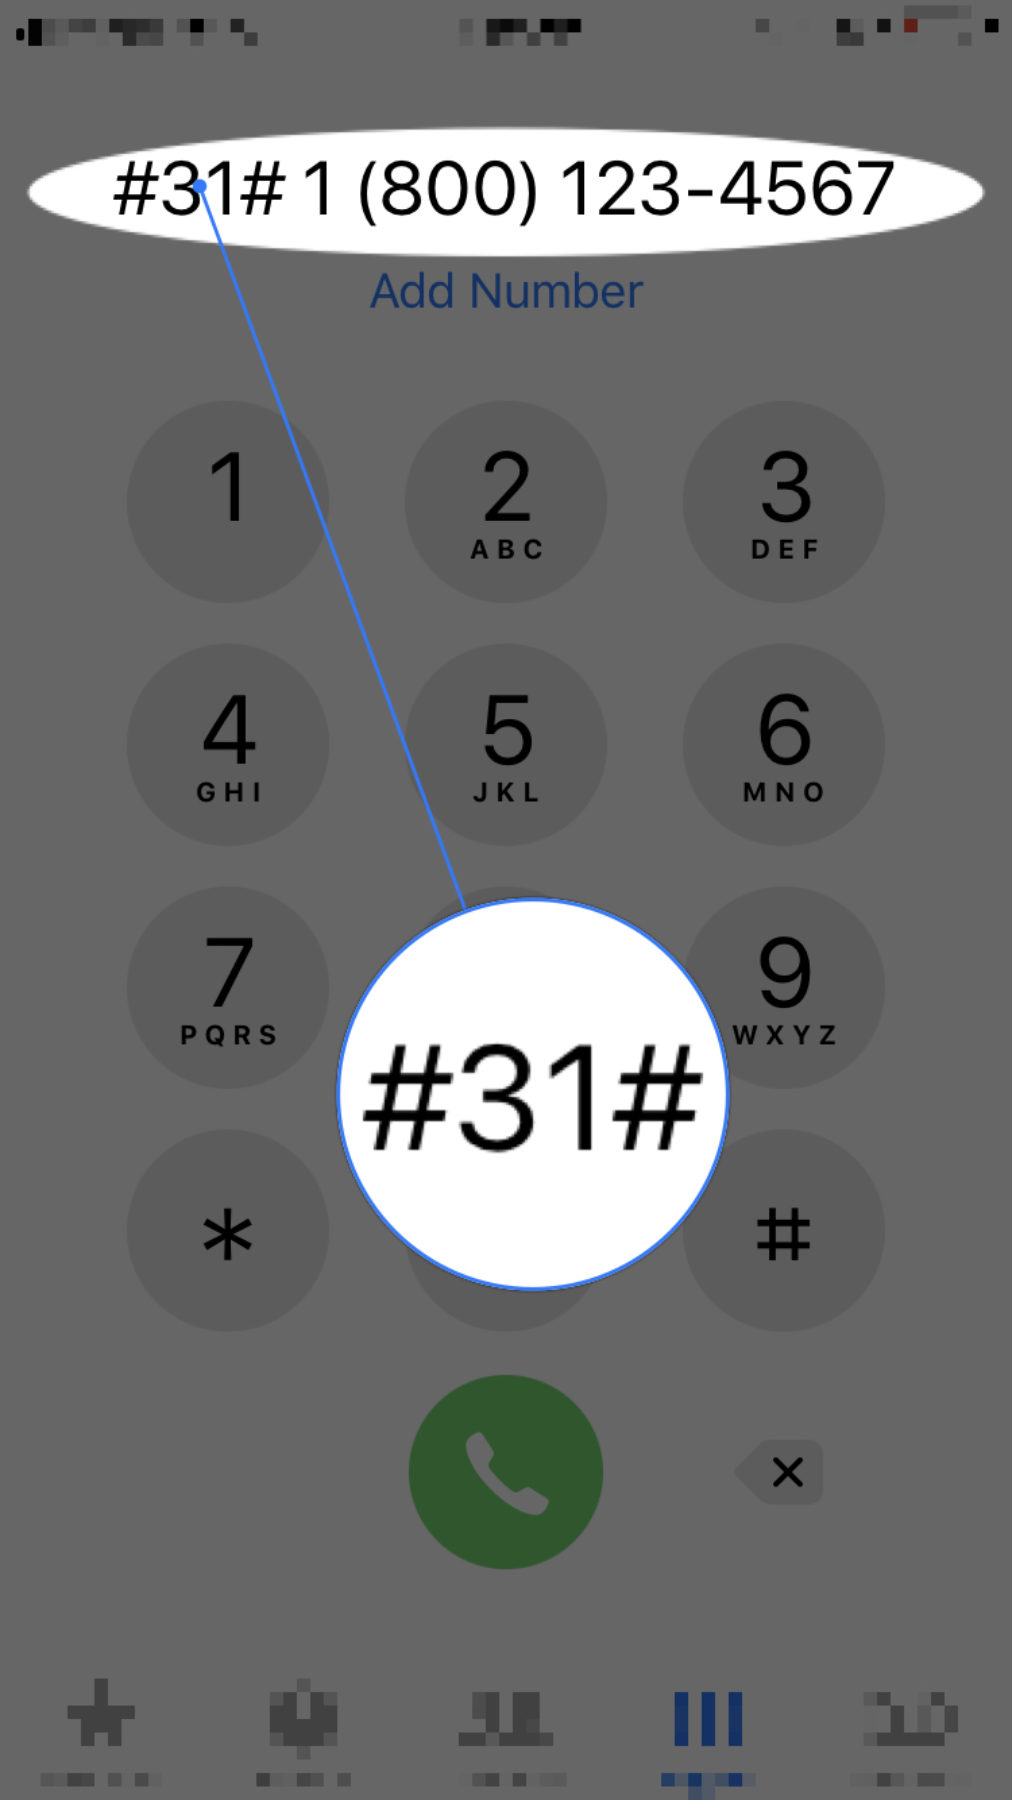 ¿Cómo Oculto Mi Número En El iPhone? ¡Cómo hacer llamadas anónimas!